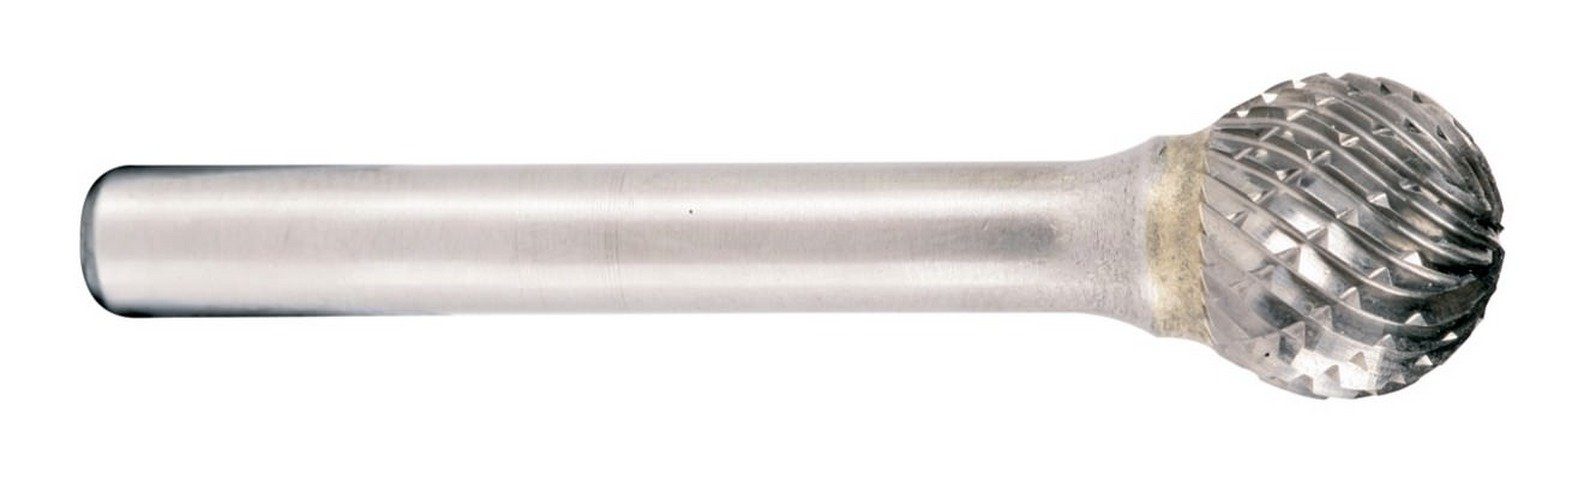 Schaftfräser, metabo x / 12,7 x mm mm 11 D-Form Kugel Schaft 6 56 Hartmetall-Fräser